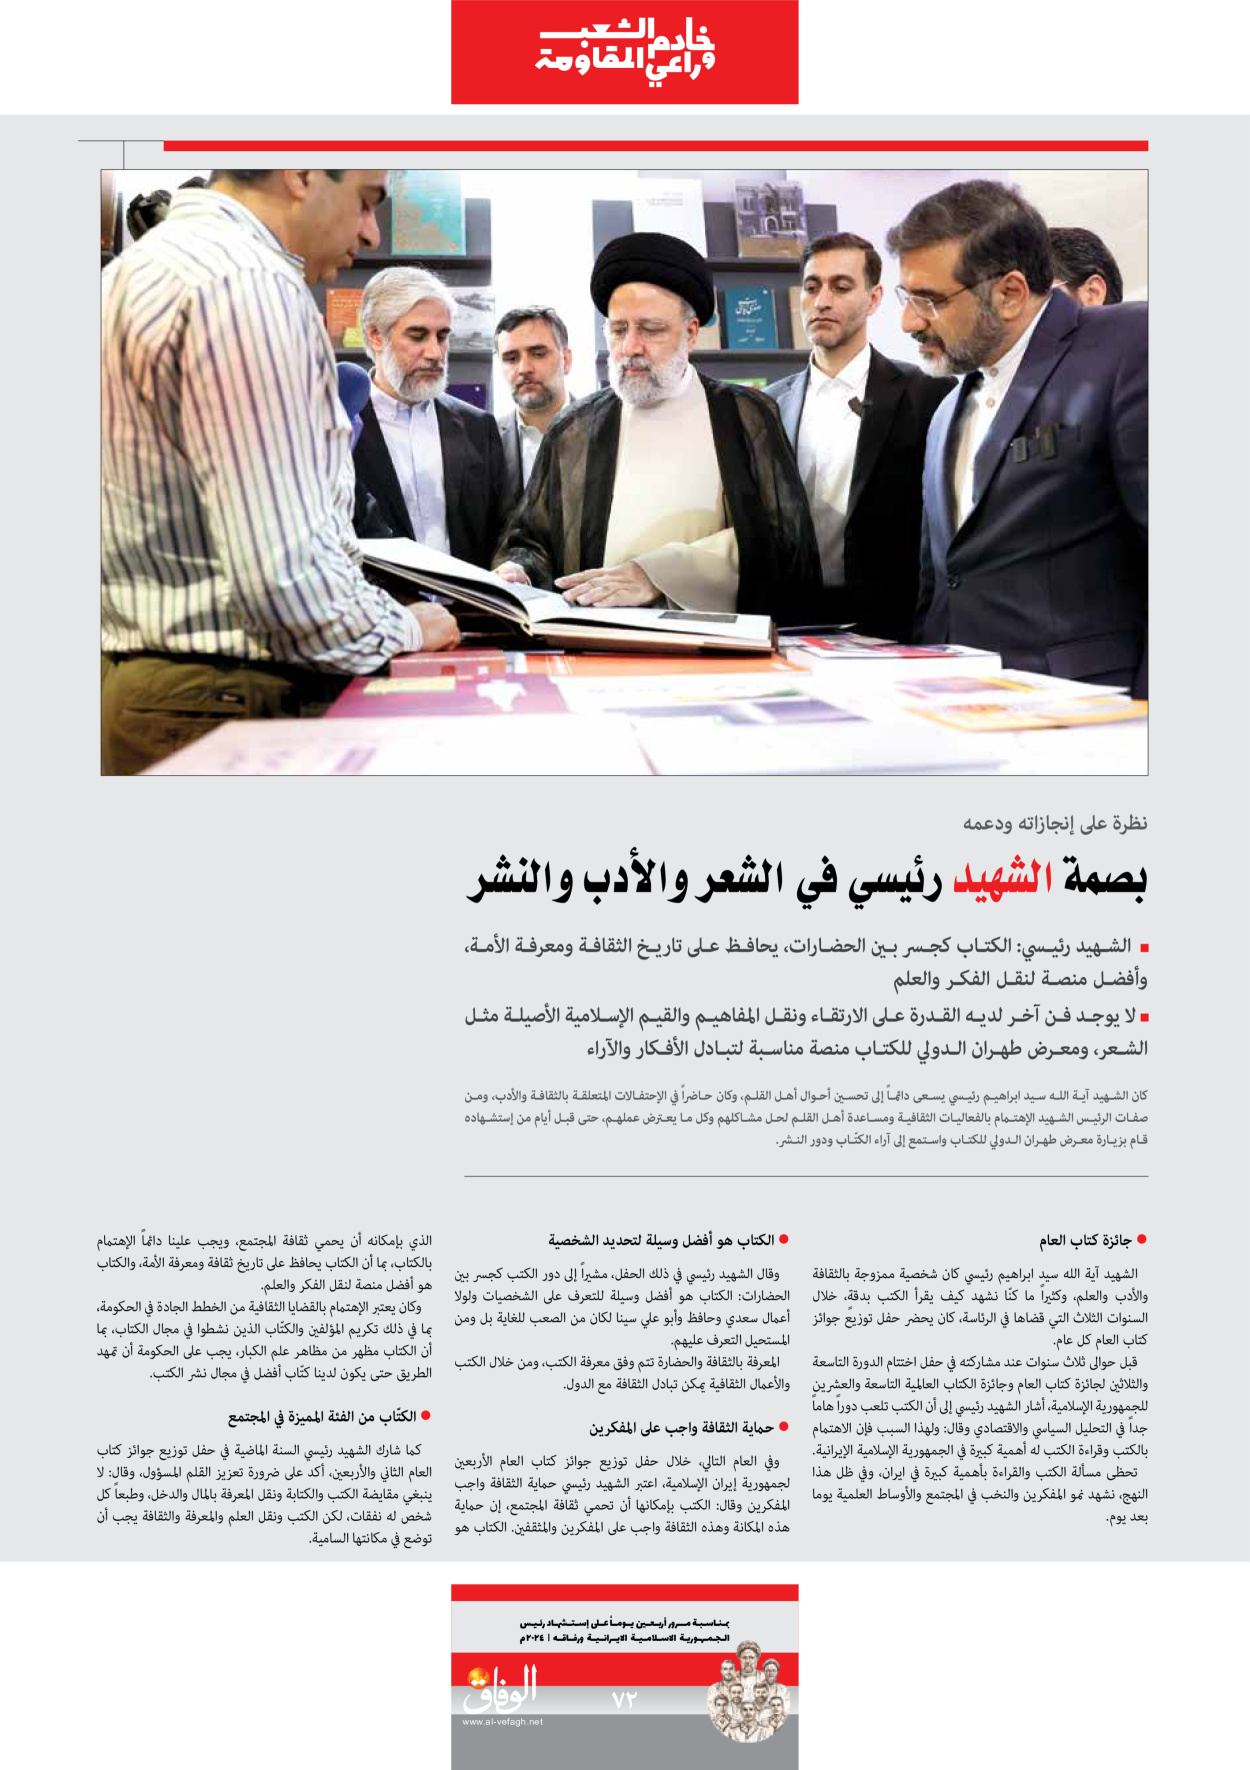 صحیفة ایران الدولیة الوفاق - ملحق ویژه نامه چهلم شهید رییسی - ٢٩ يونيو ٢٠٢٤ - الصفحة ۷۲